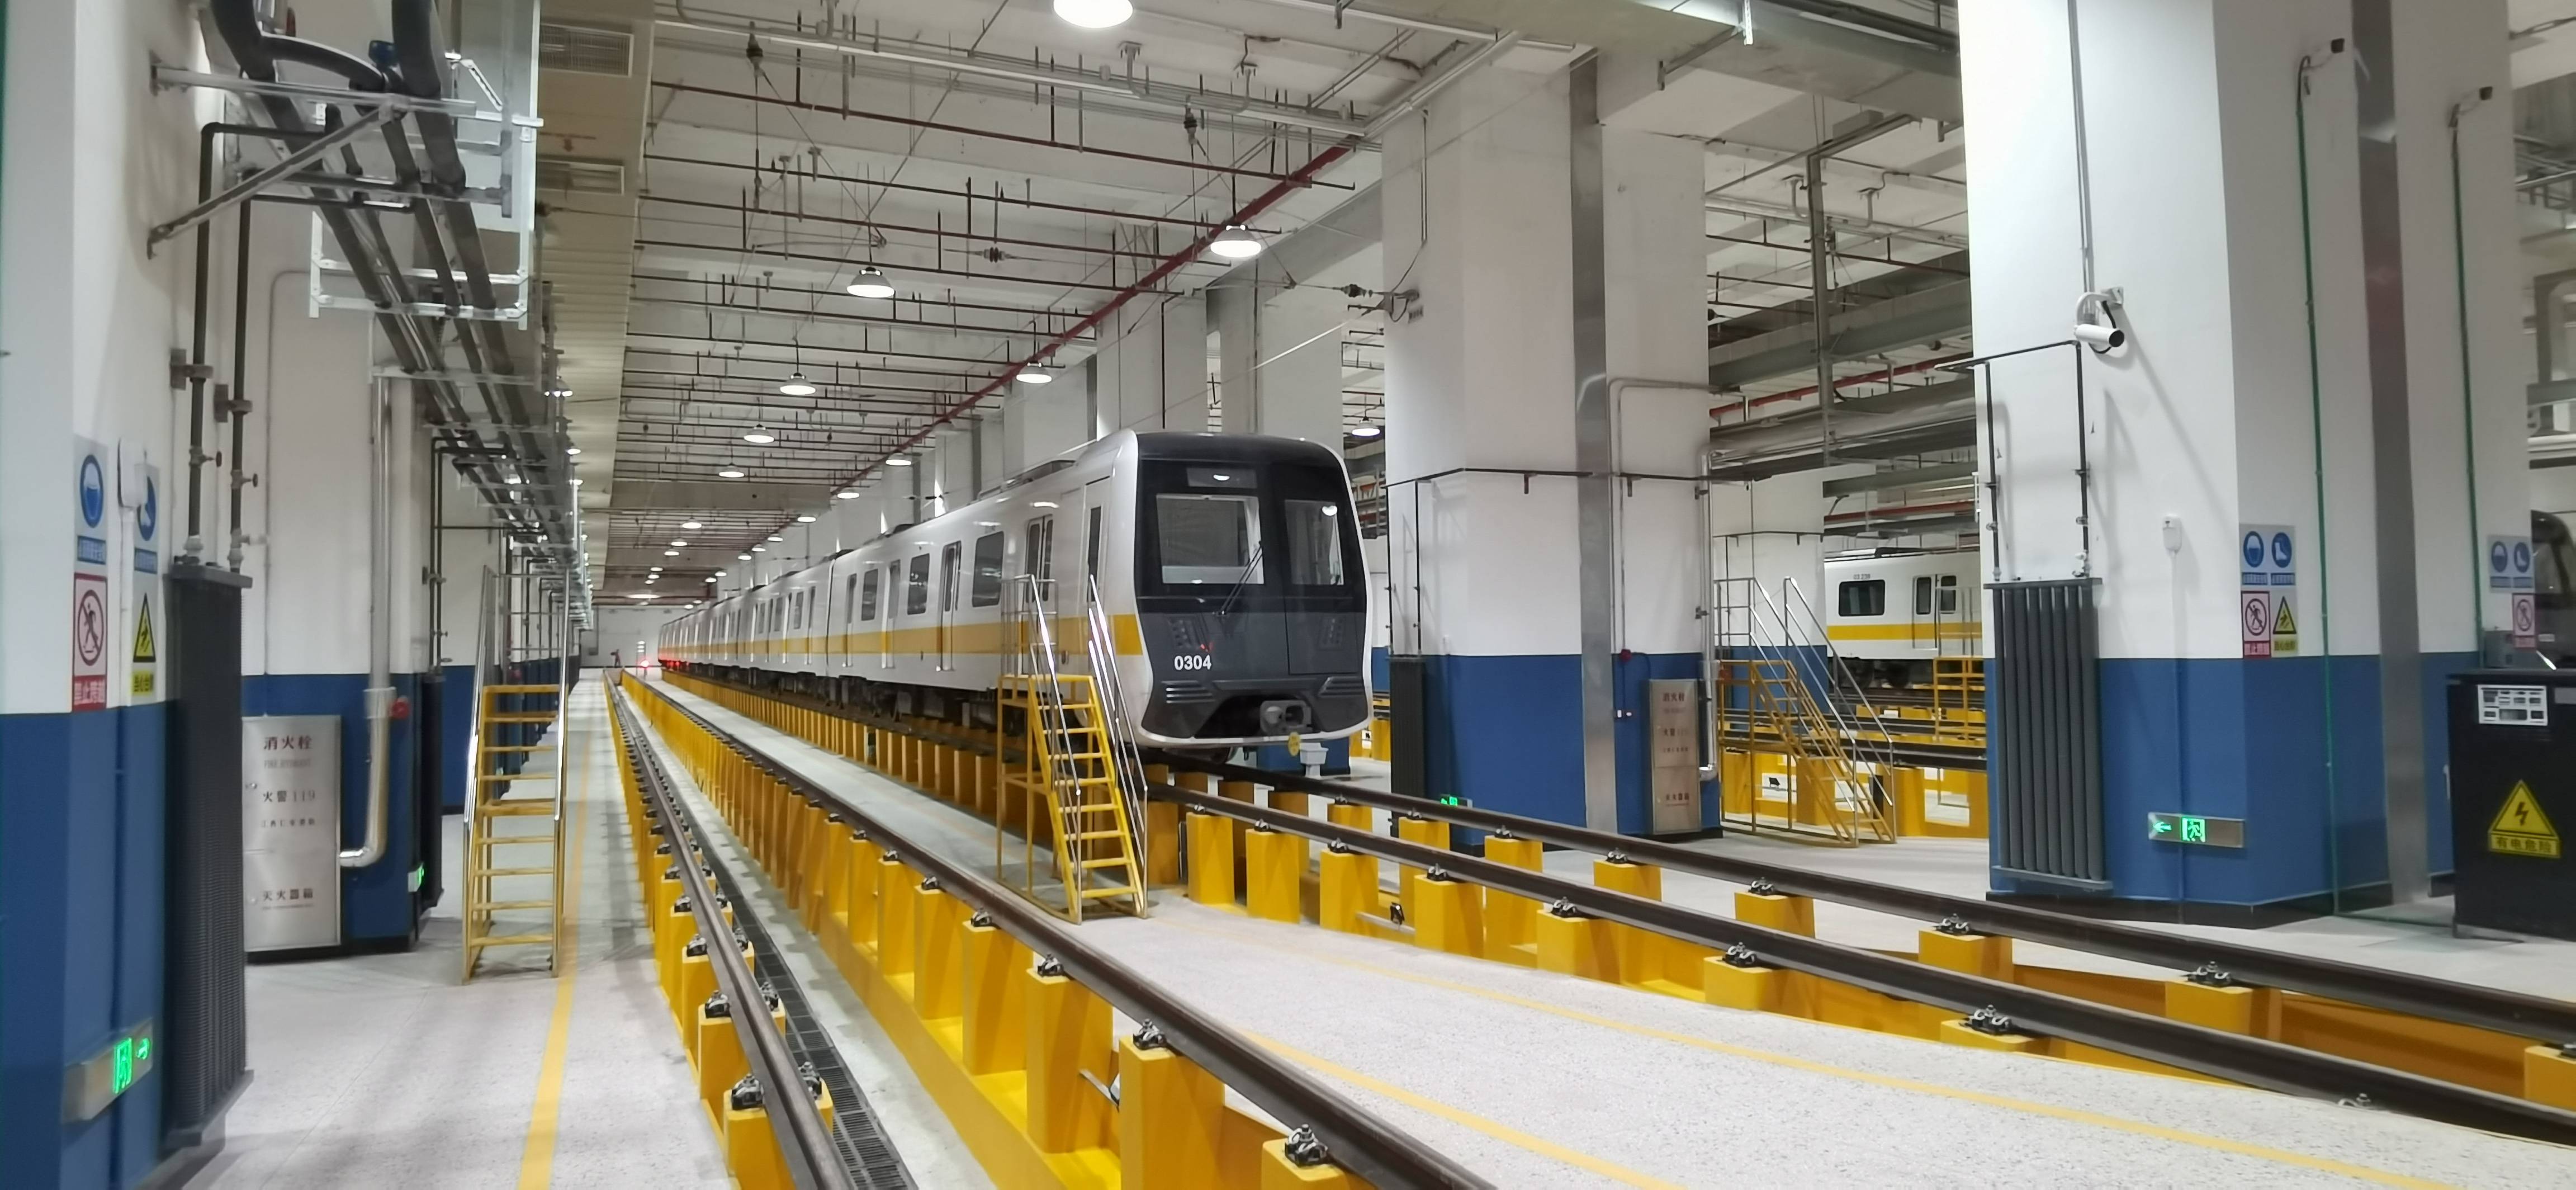 哈尔滨地铁3号线4s店预计年内投用